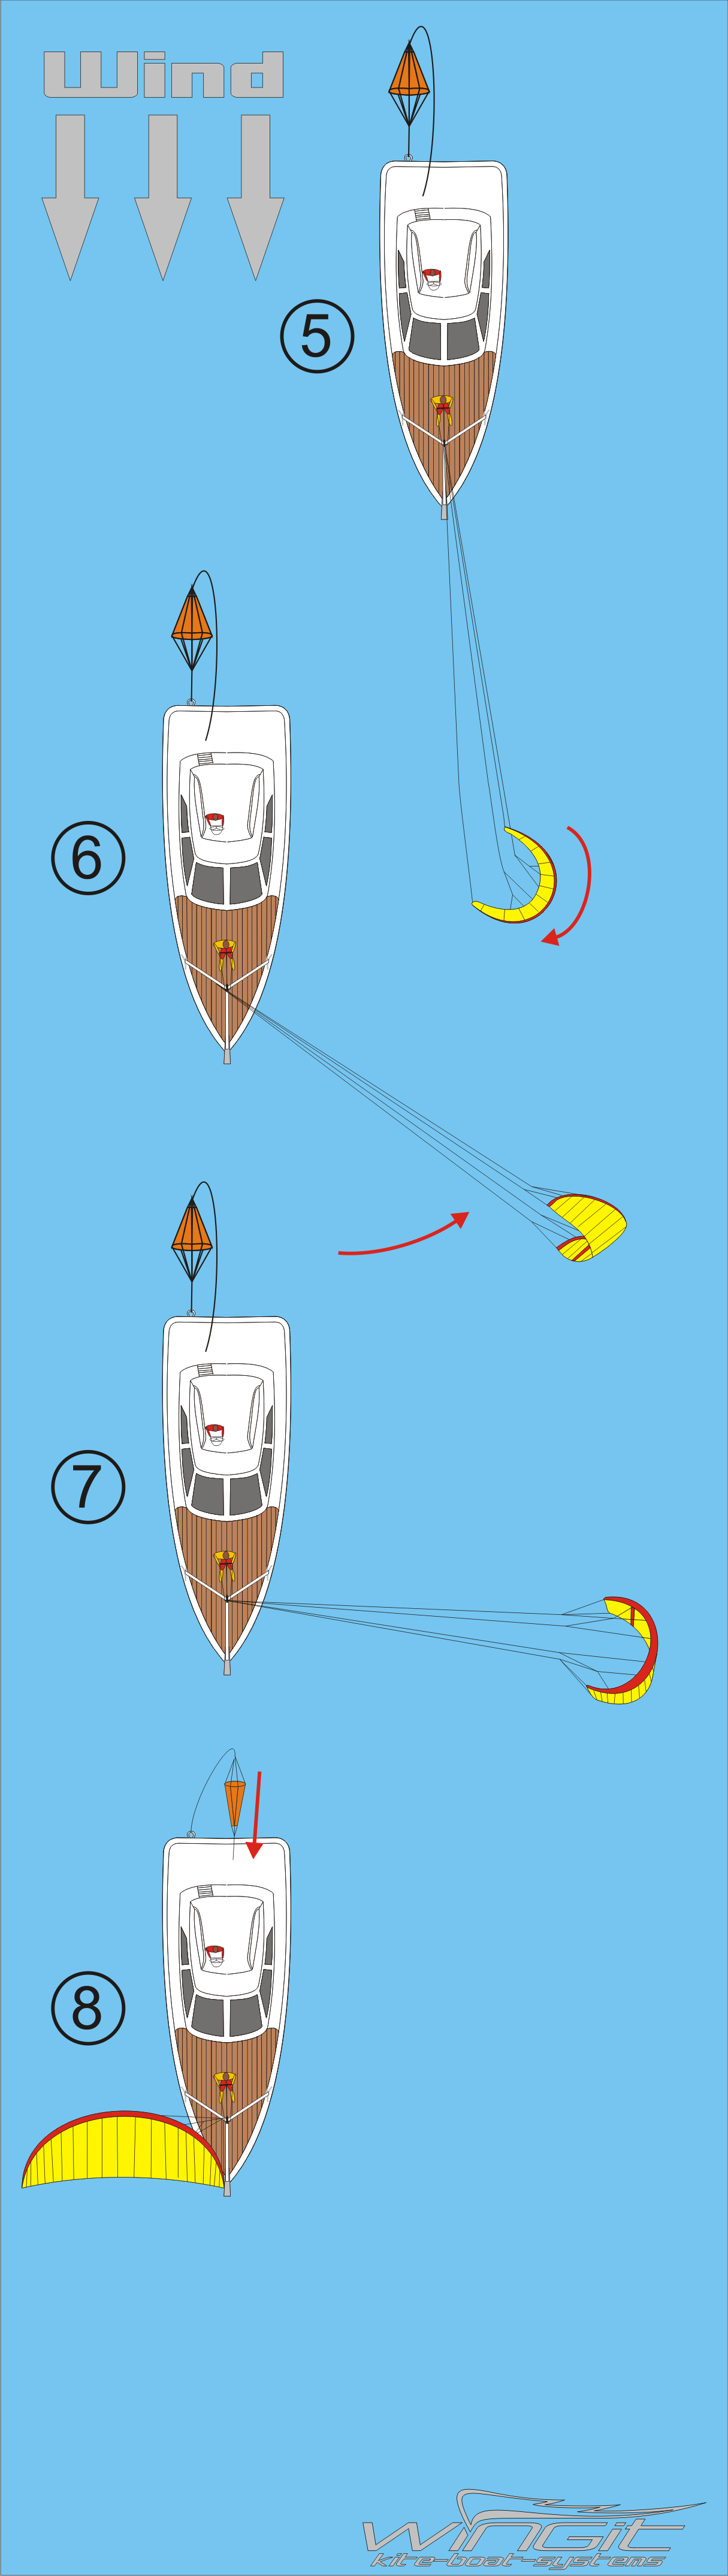 kite-yacht2